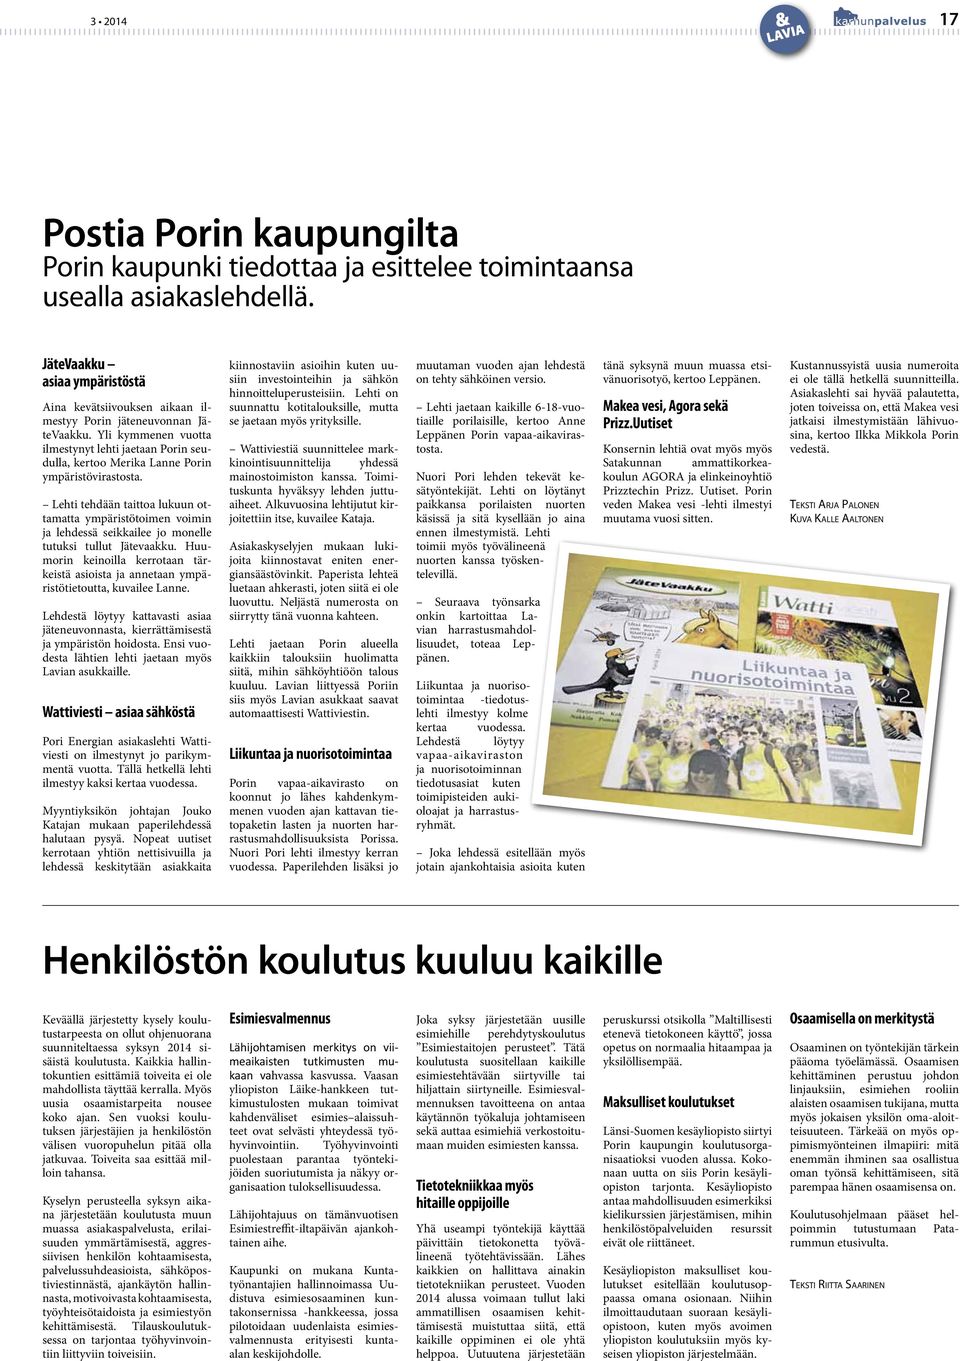 Yli kymmenen vuotta ilmestynyt lehti jaetaan Porin seudulla, kertoo Merika Lanne Porin ympäristövirastosta.